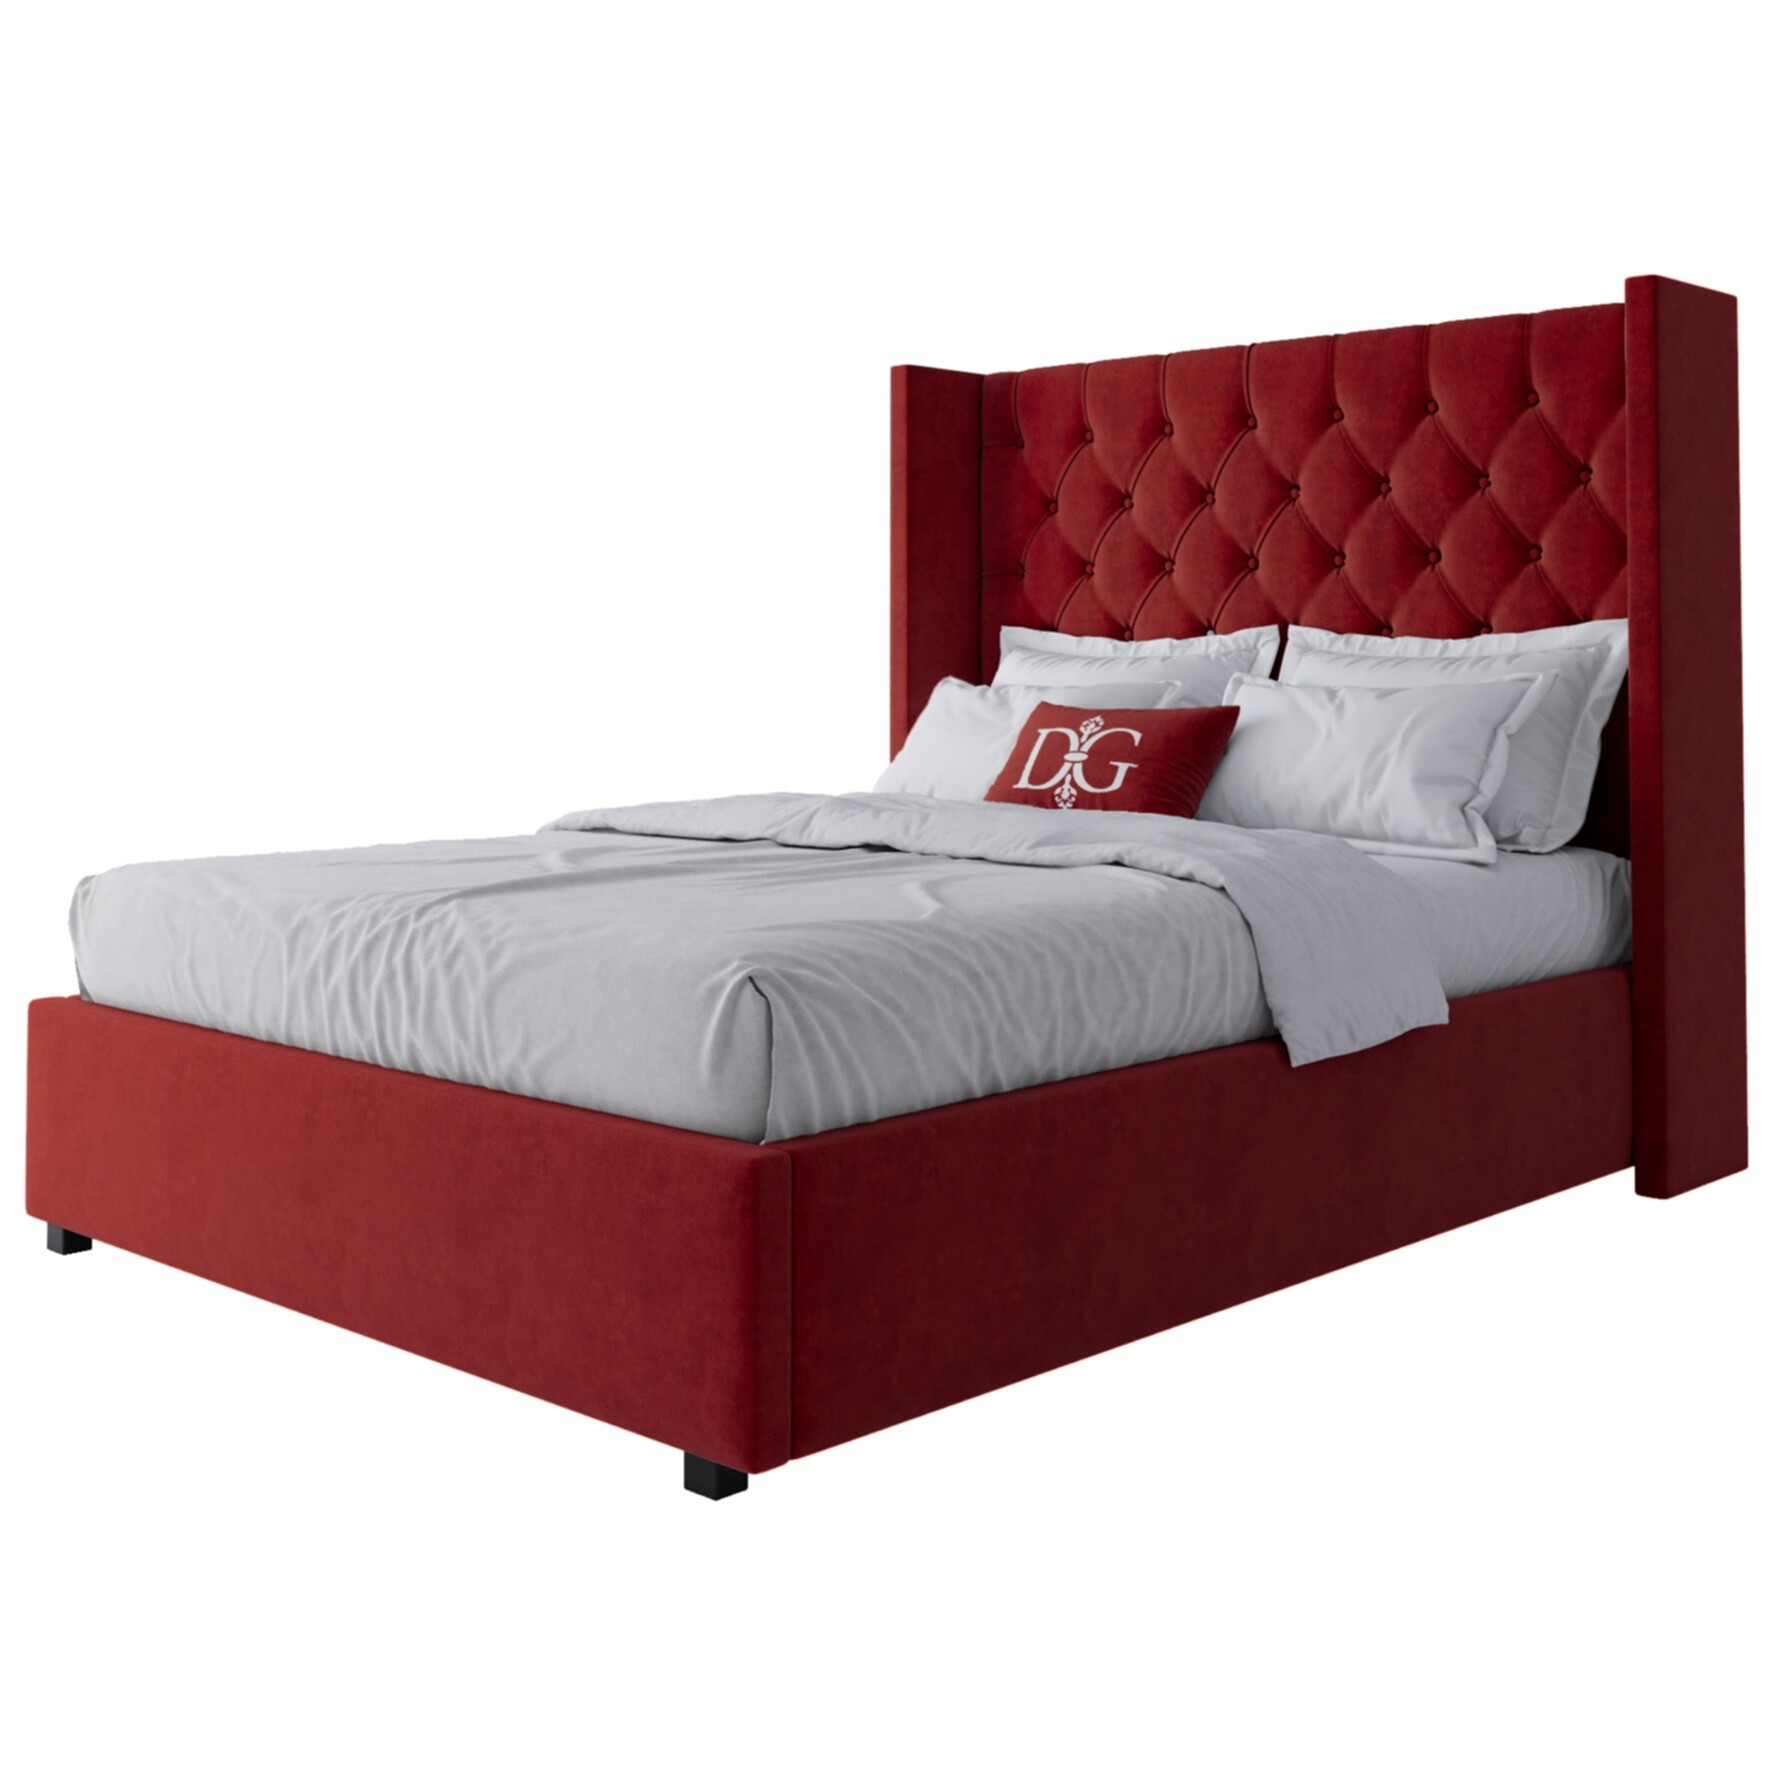 Кровать подростковая 140х200 см красная с каретной стяжкой без гвоздиков Wing-2